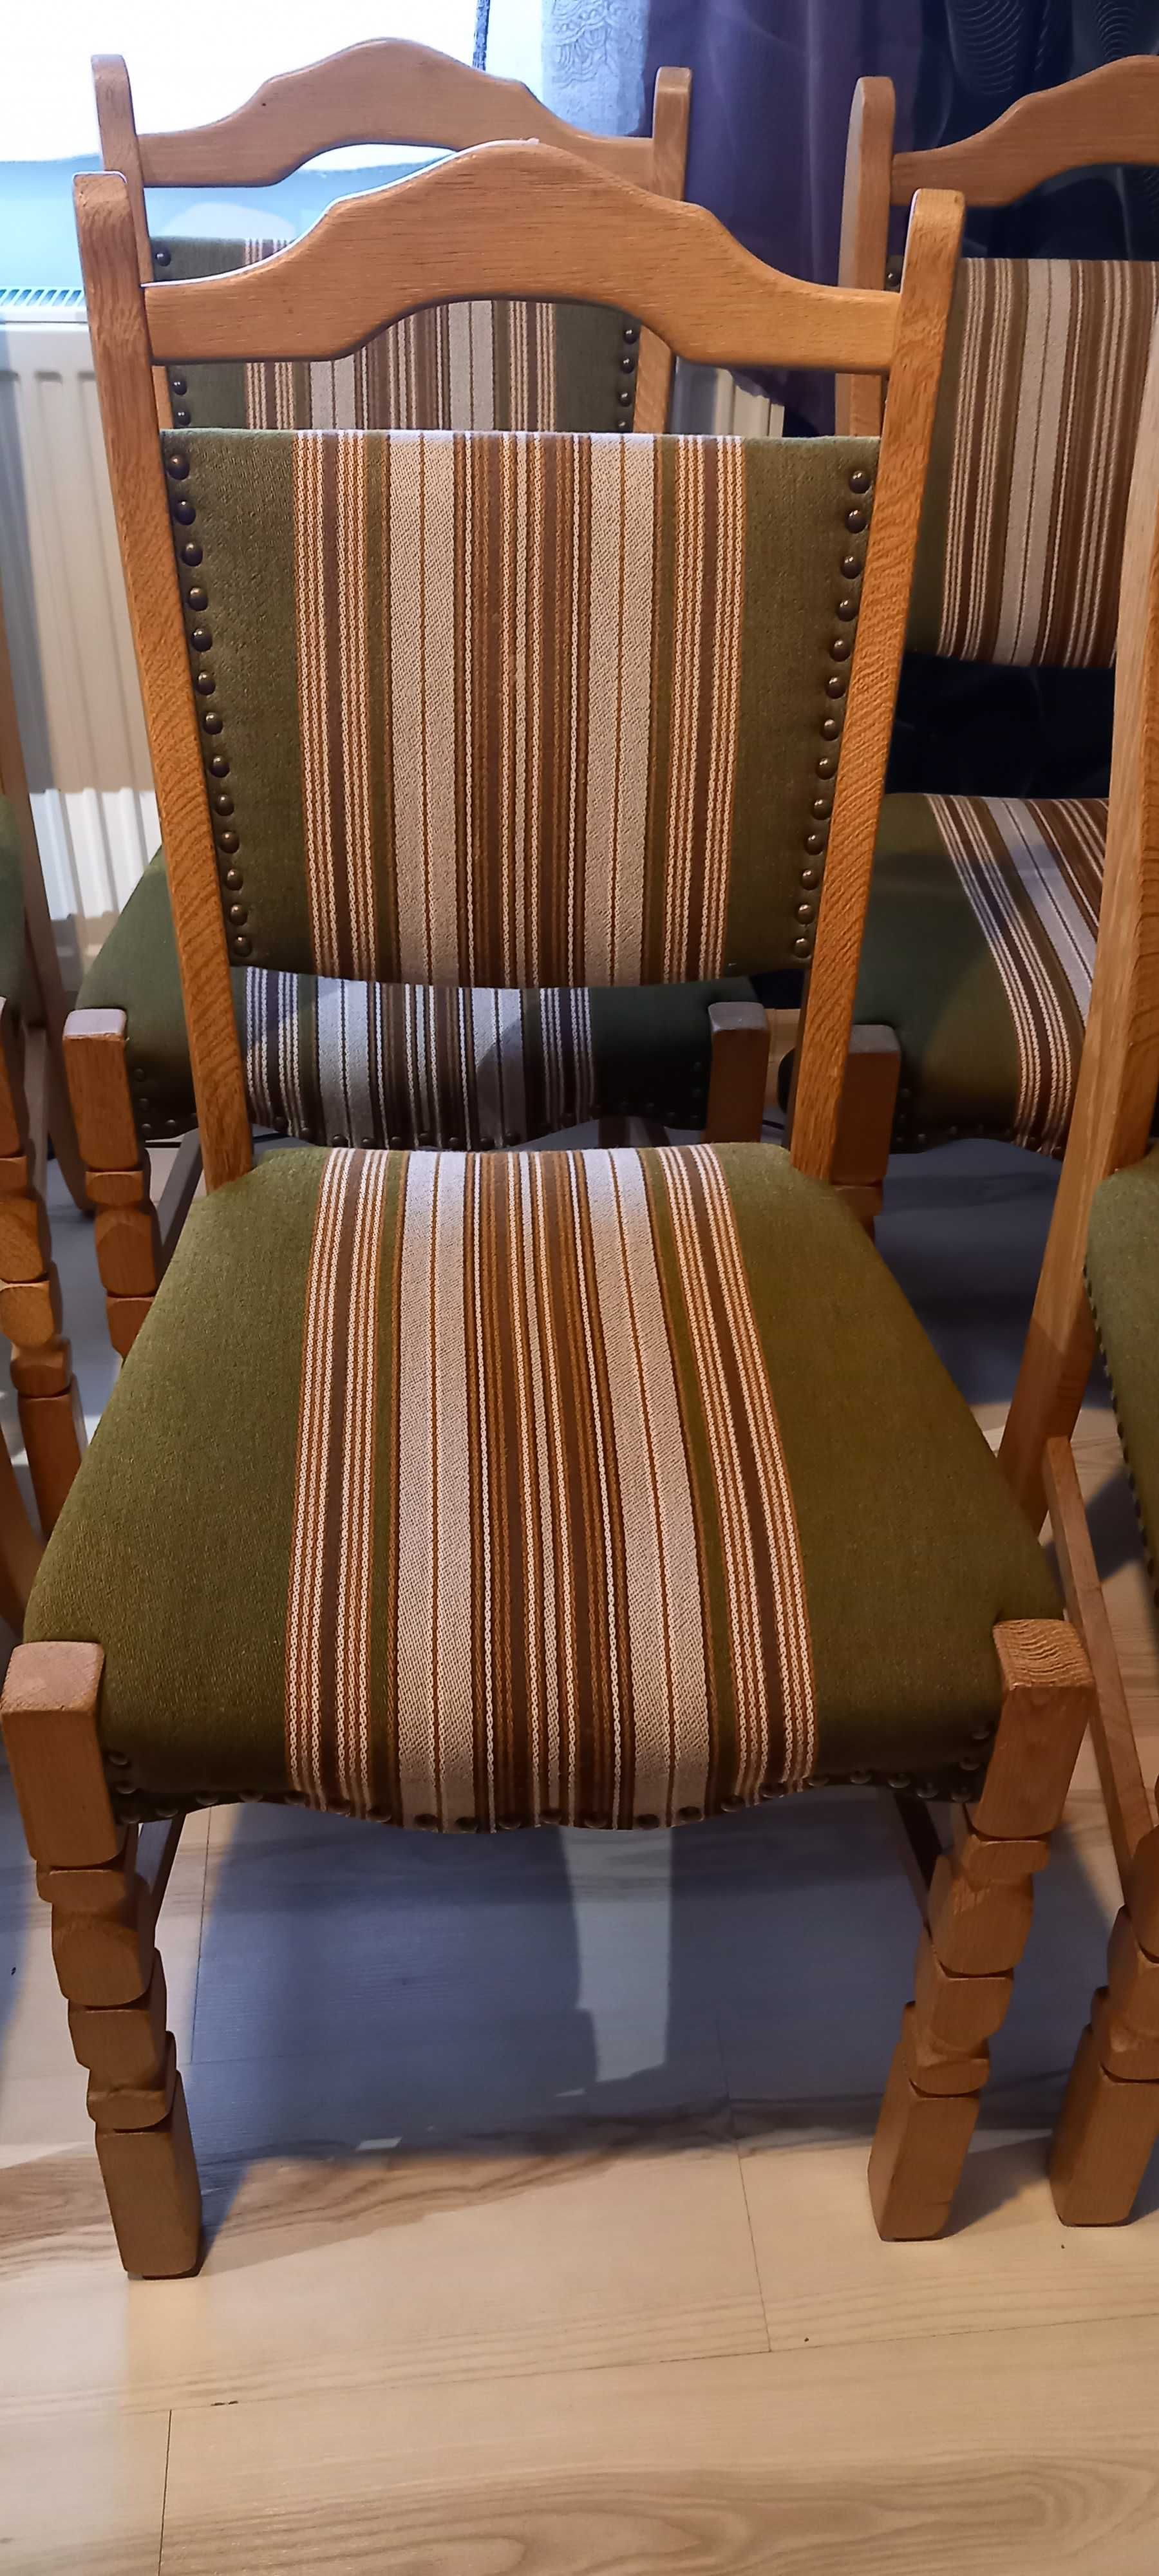 Krzesła dębowe w naturalnym kolorze - 6 sztuk